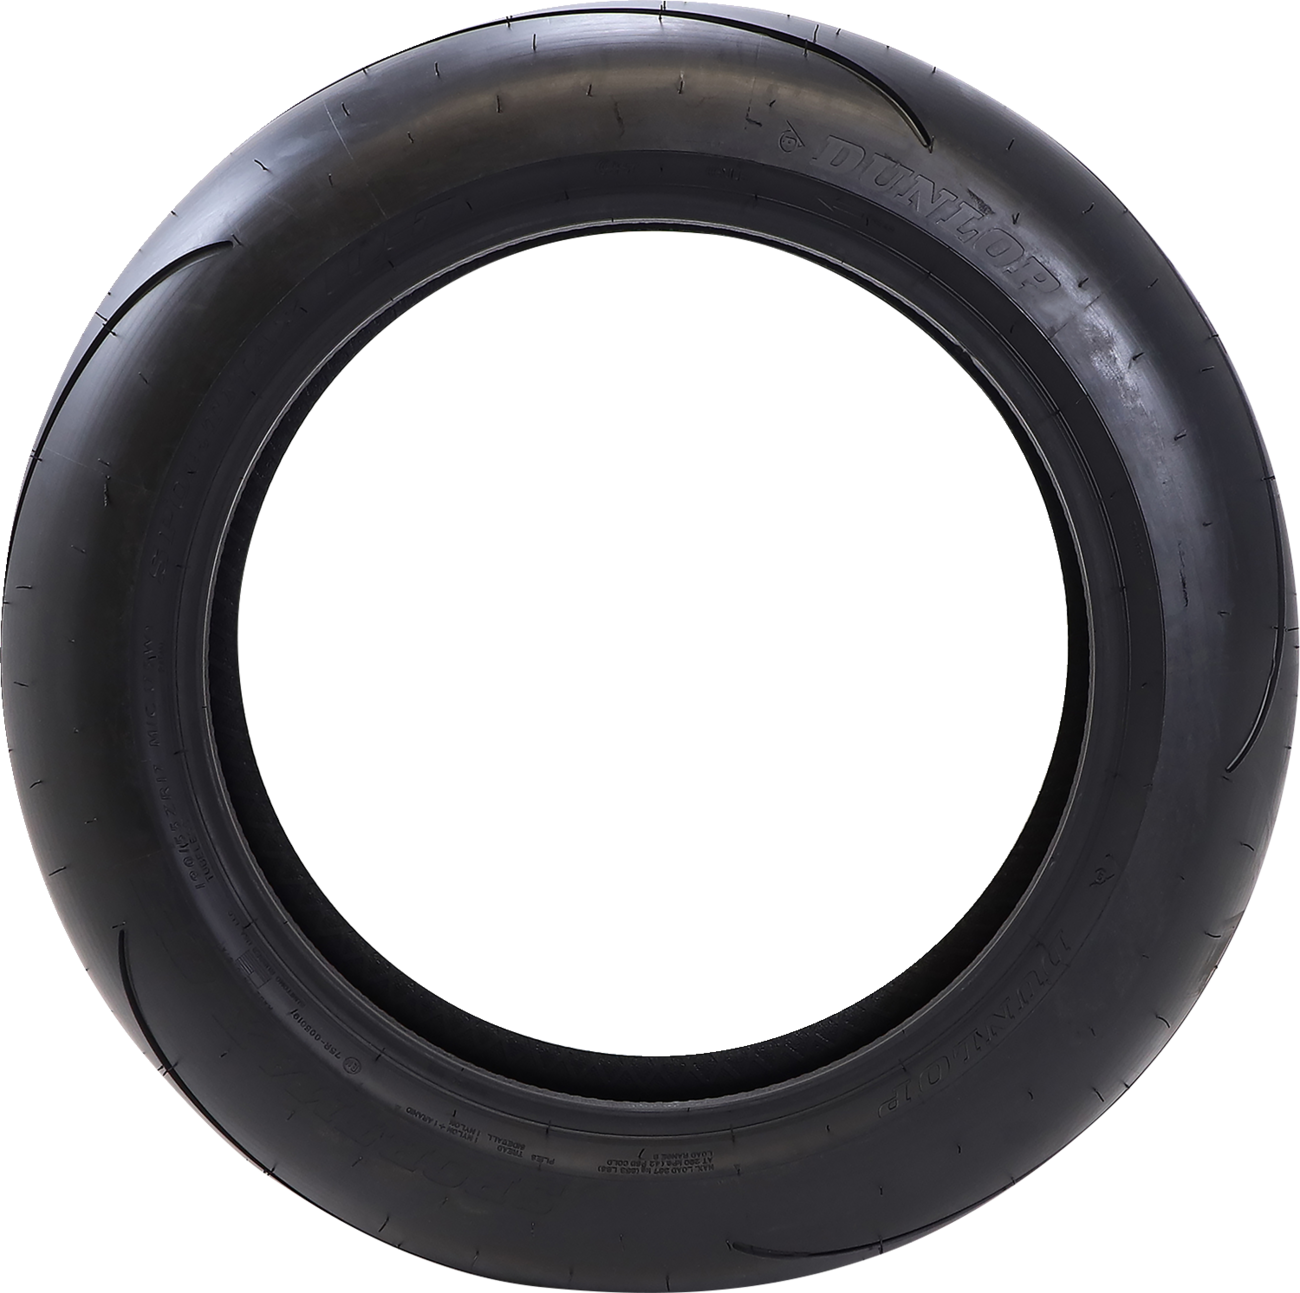 DUNLOP Tire - Sportmax® Q5 - Rear - 190/55ZR17 - (75W) 45247188